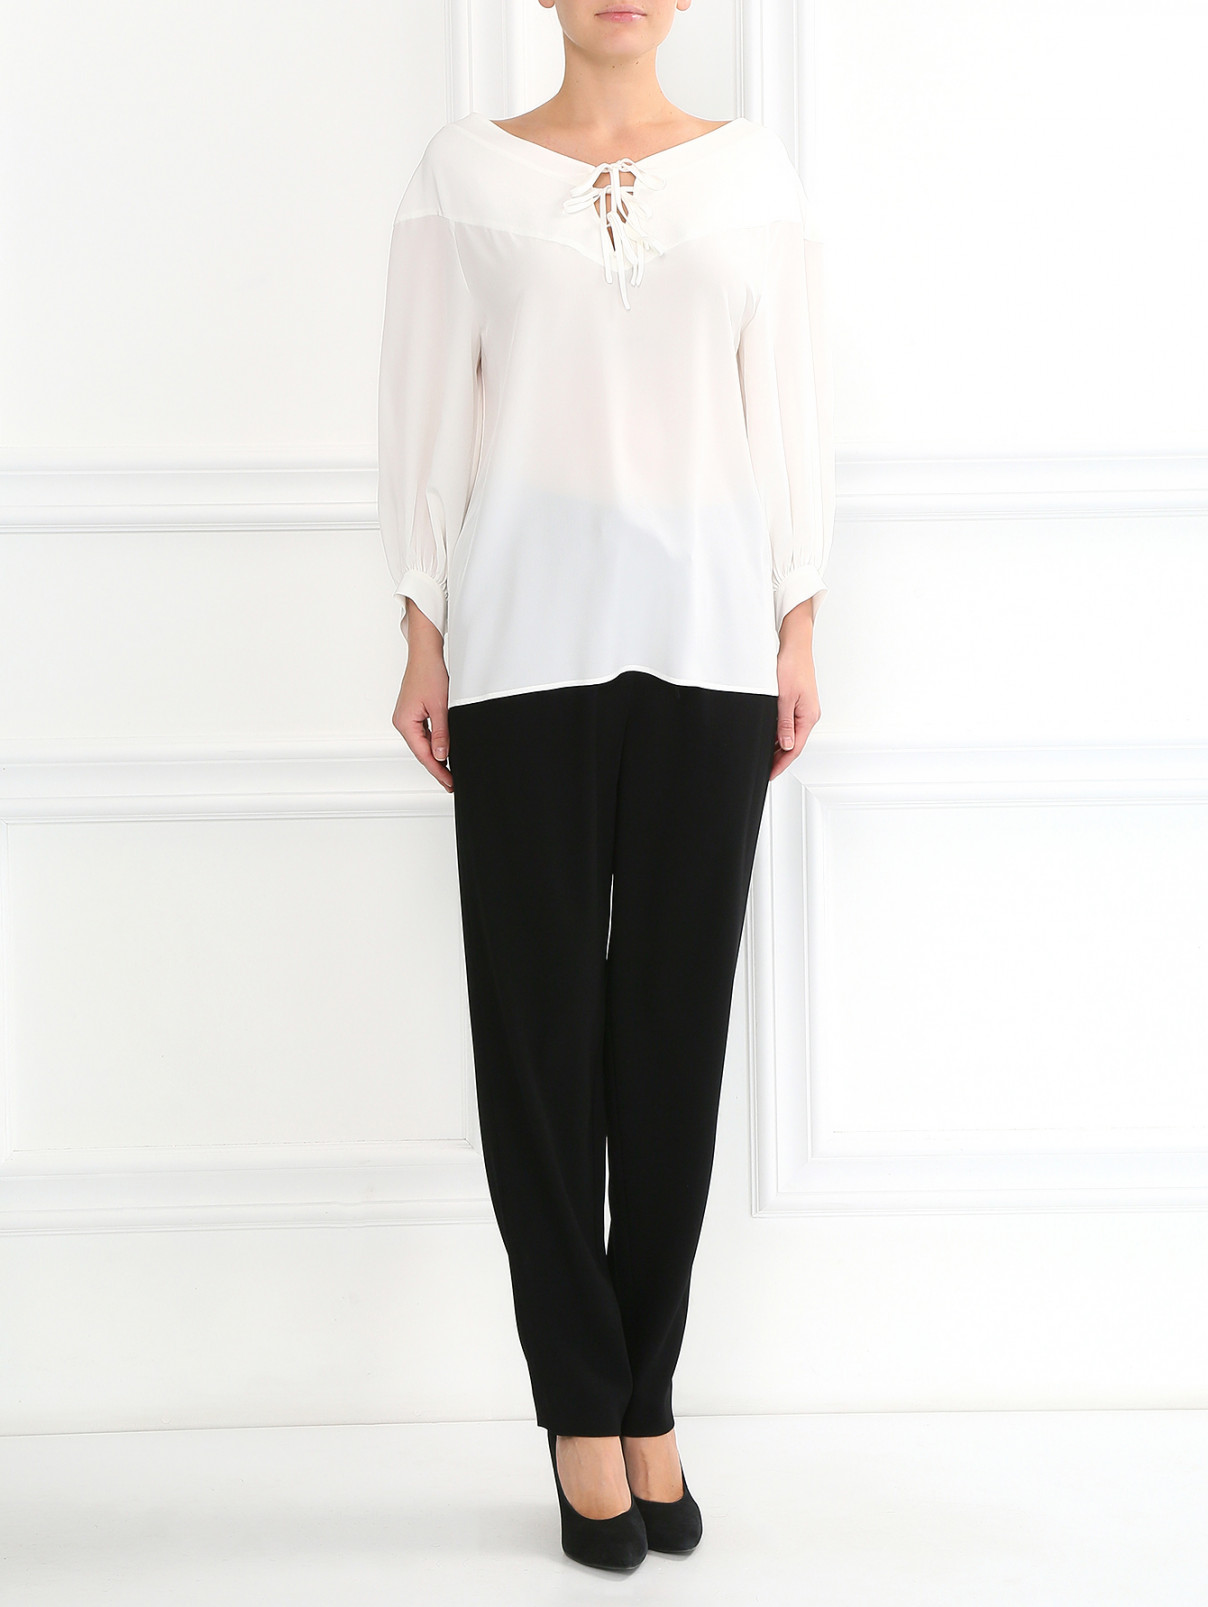 Блуза из шелка свободного кроя Barbara Bui  –  Модель Общий вид  – Цвет:  Белый